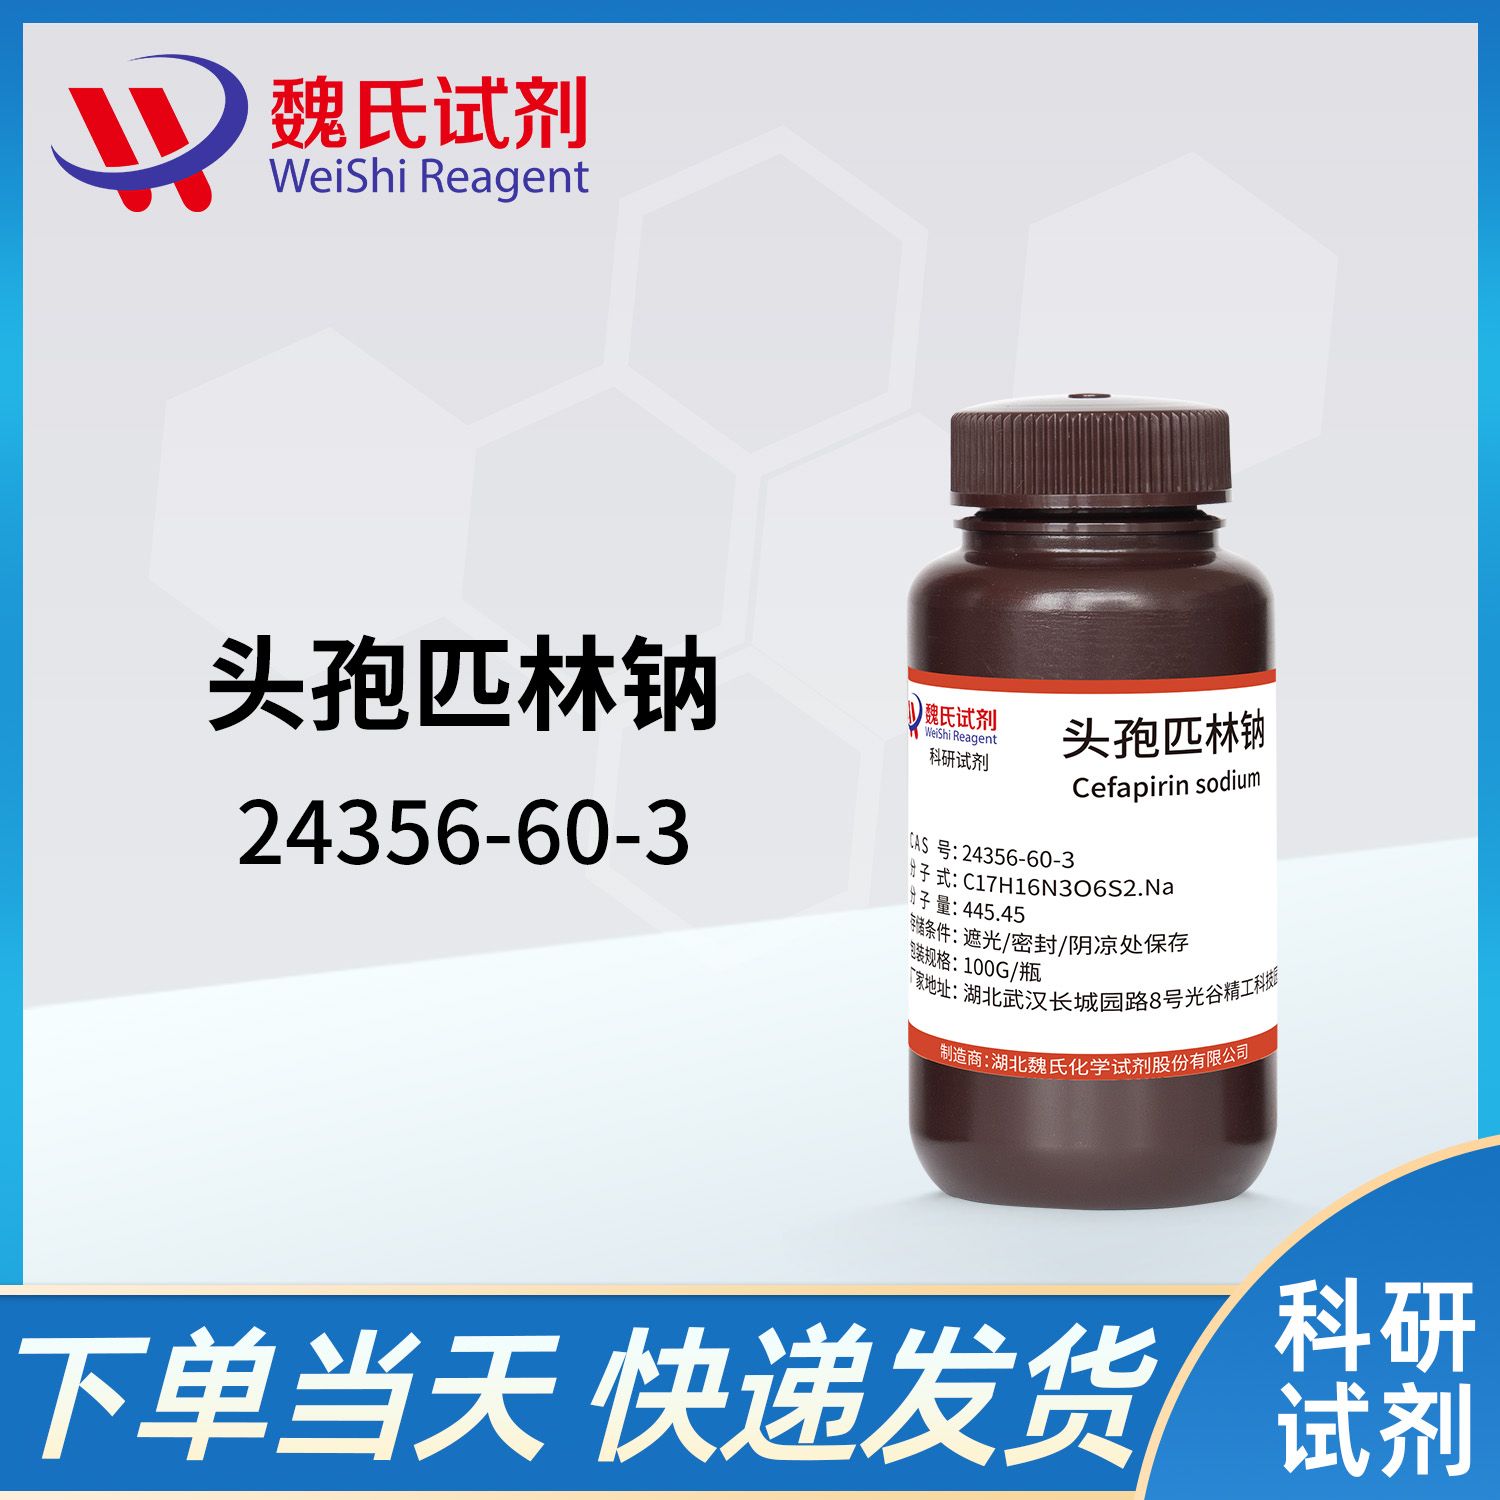 24356-60-3 /头孢匹林钠/Cefapirin sodium